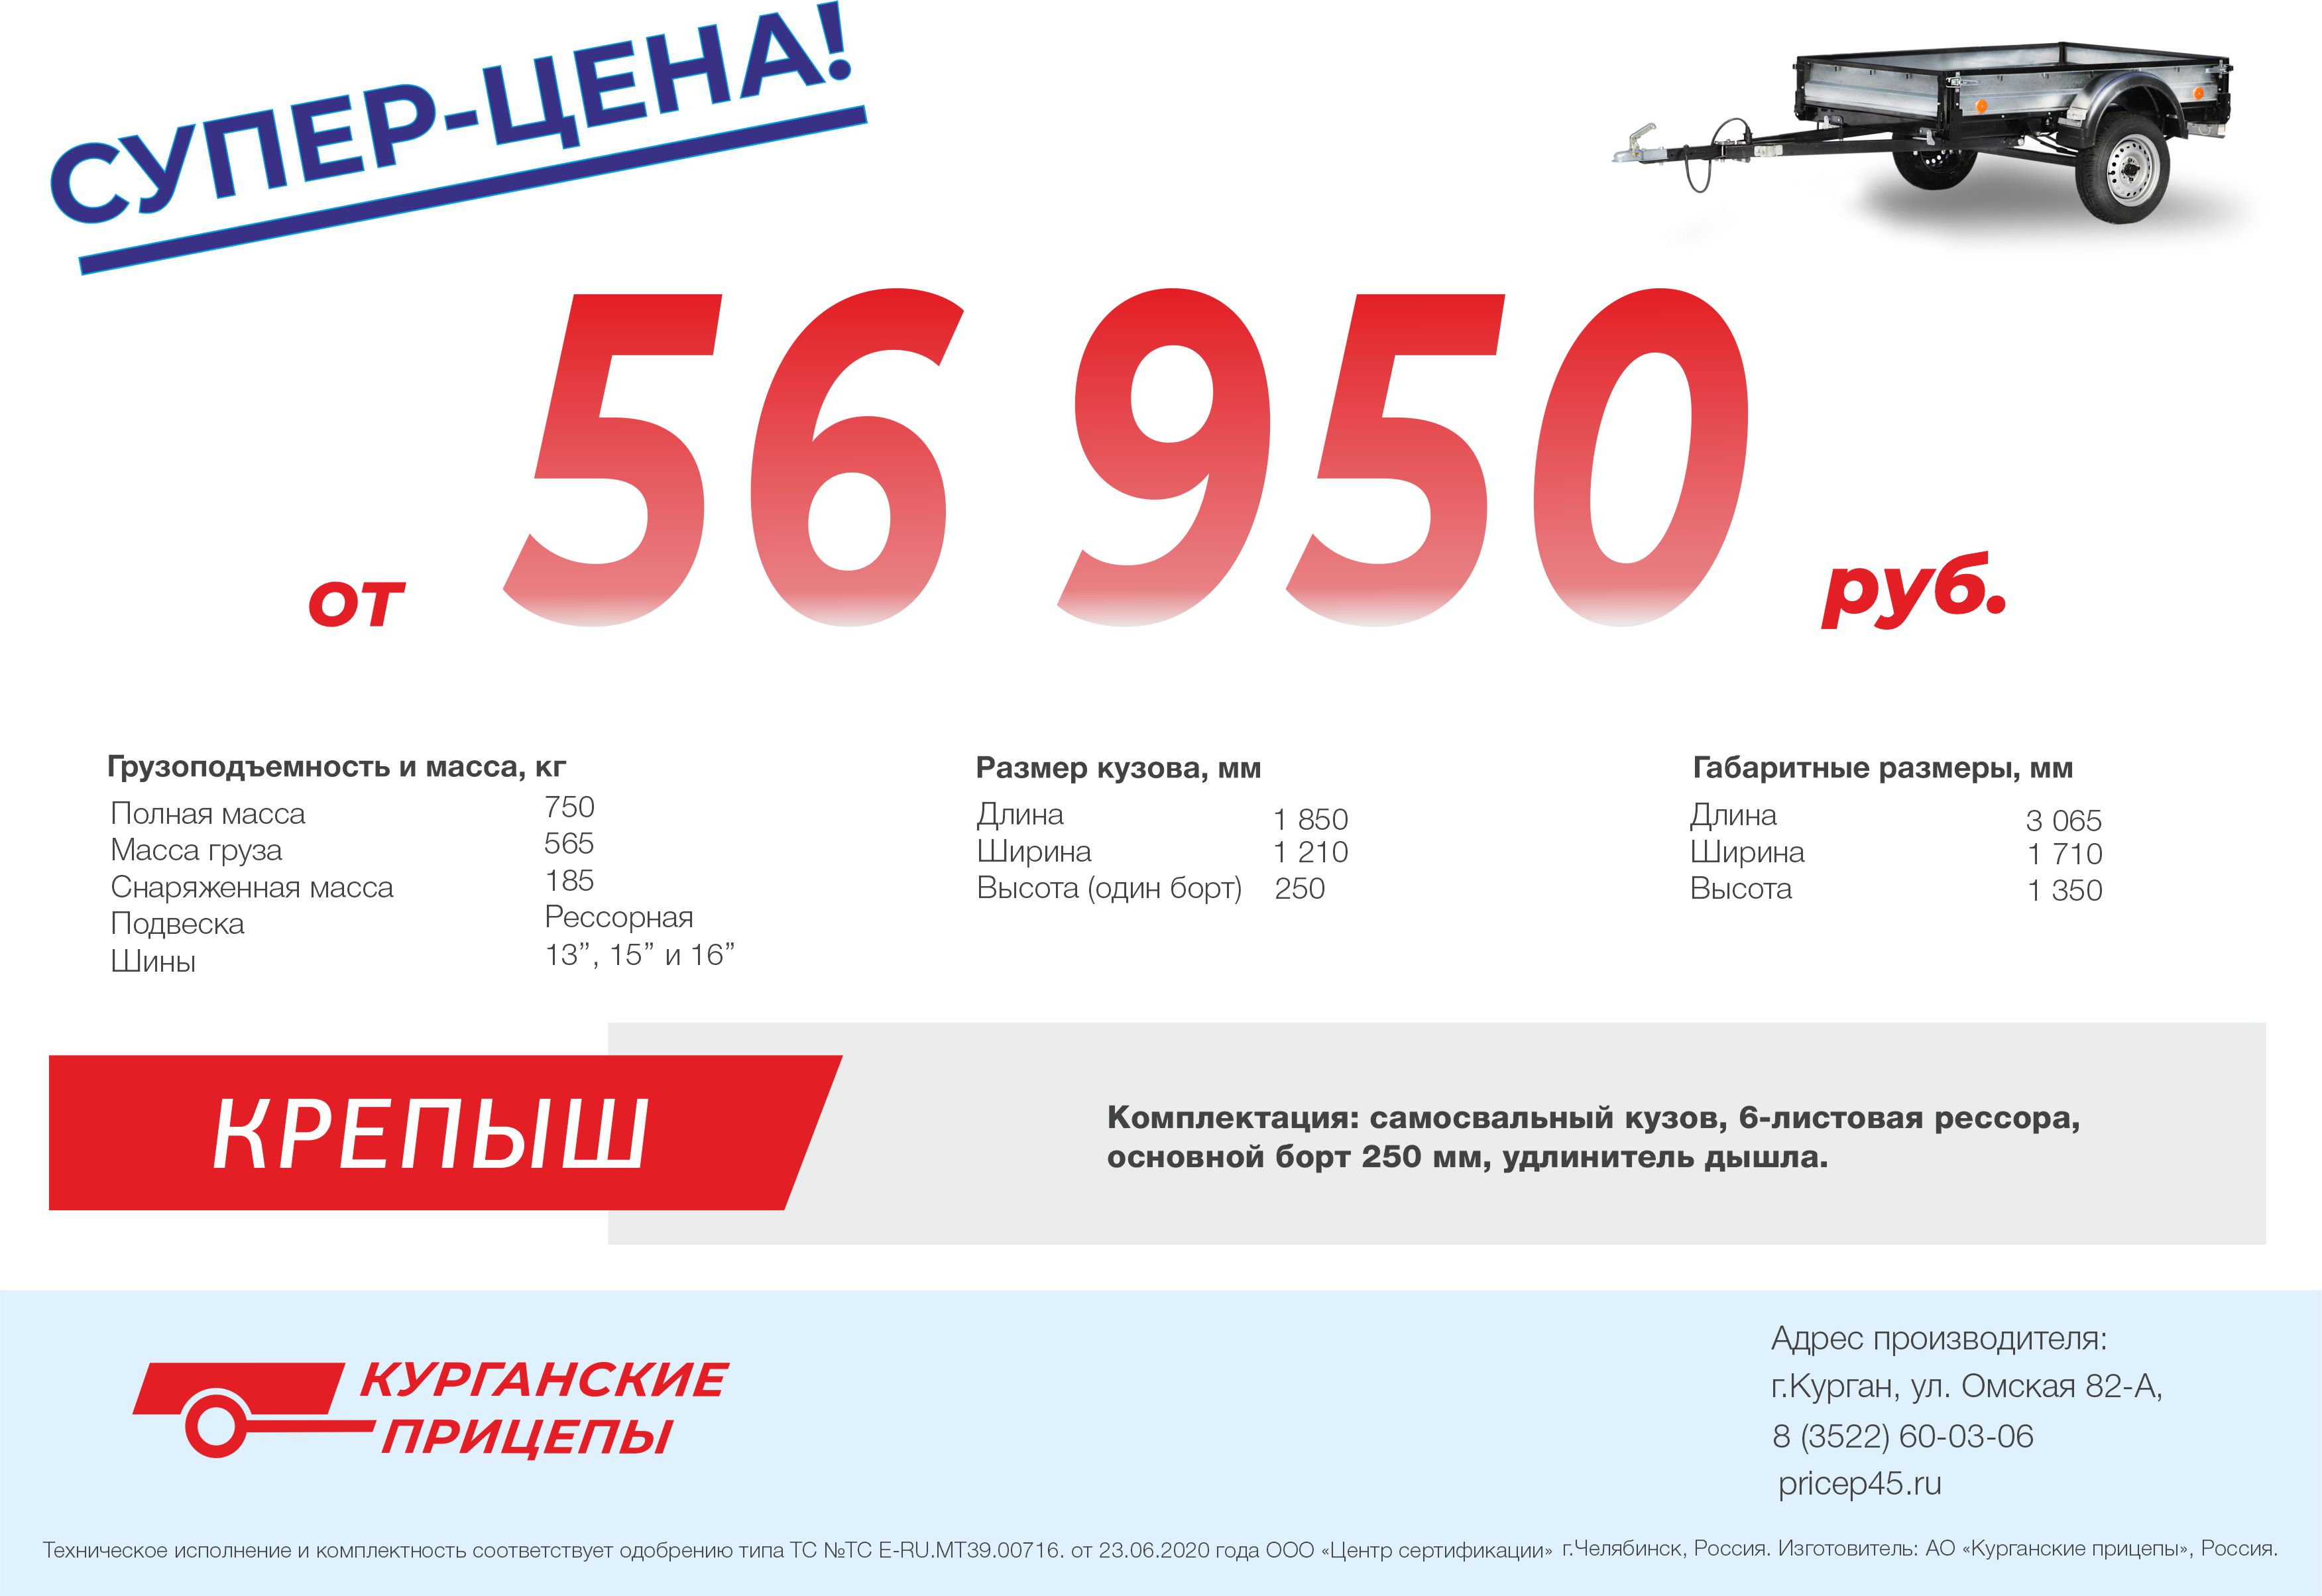 pricep16.ru Прицеп "Крепыш"